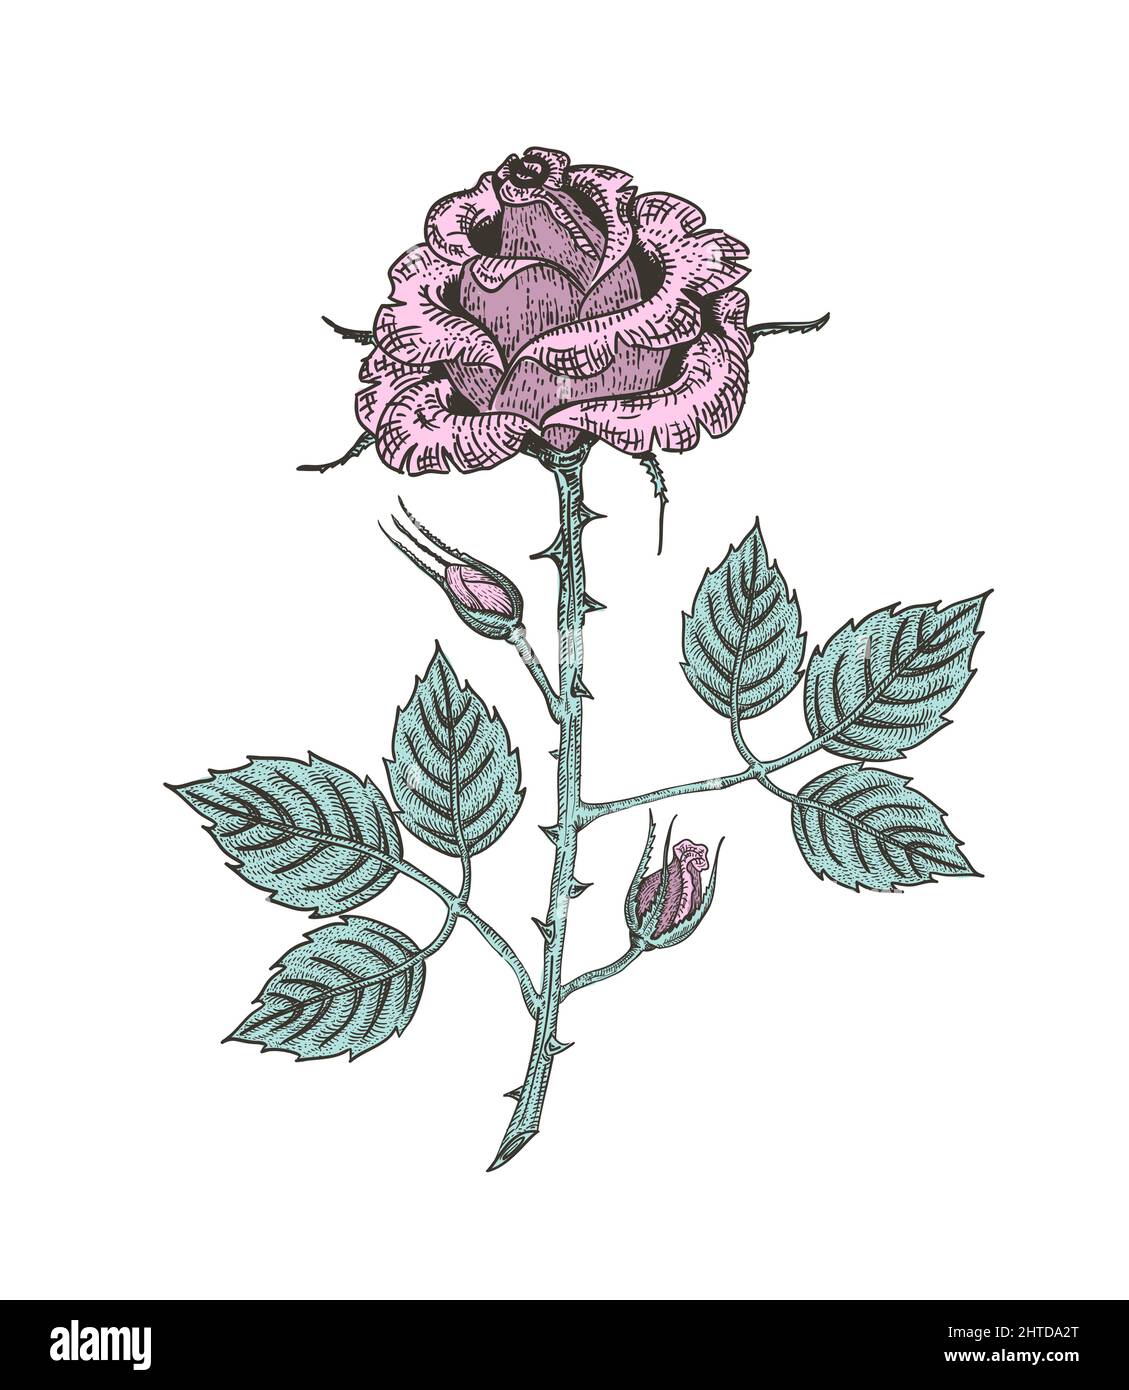 Vektor-Illustration einer rosa Rosenblume, botanisch handgezeichnete gravierte Skizze eines Pflanzenzweiges mit Knospen und Blättern Stock Vektor